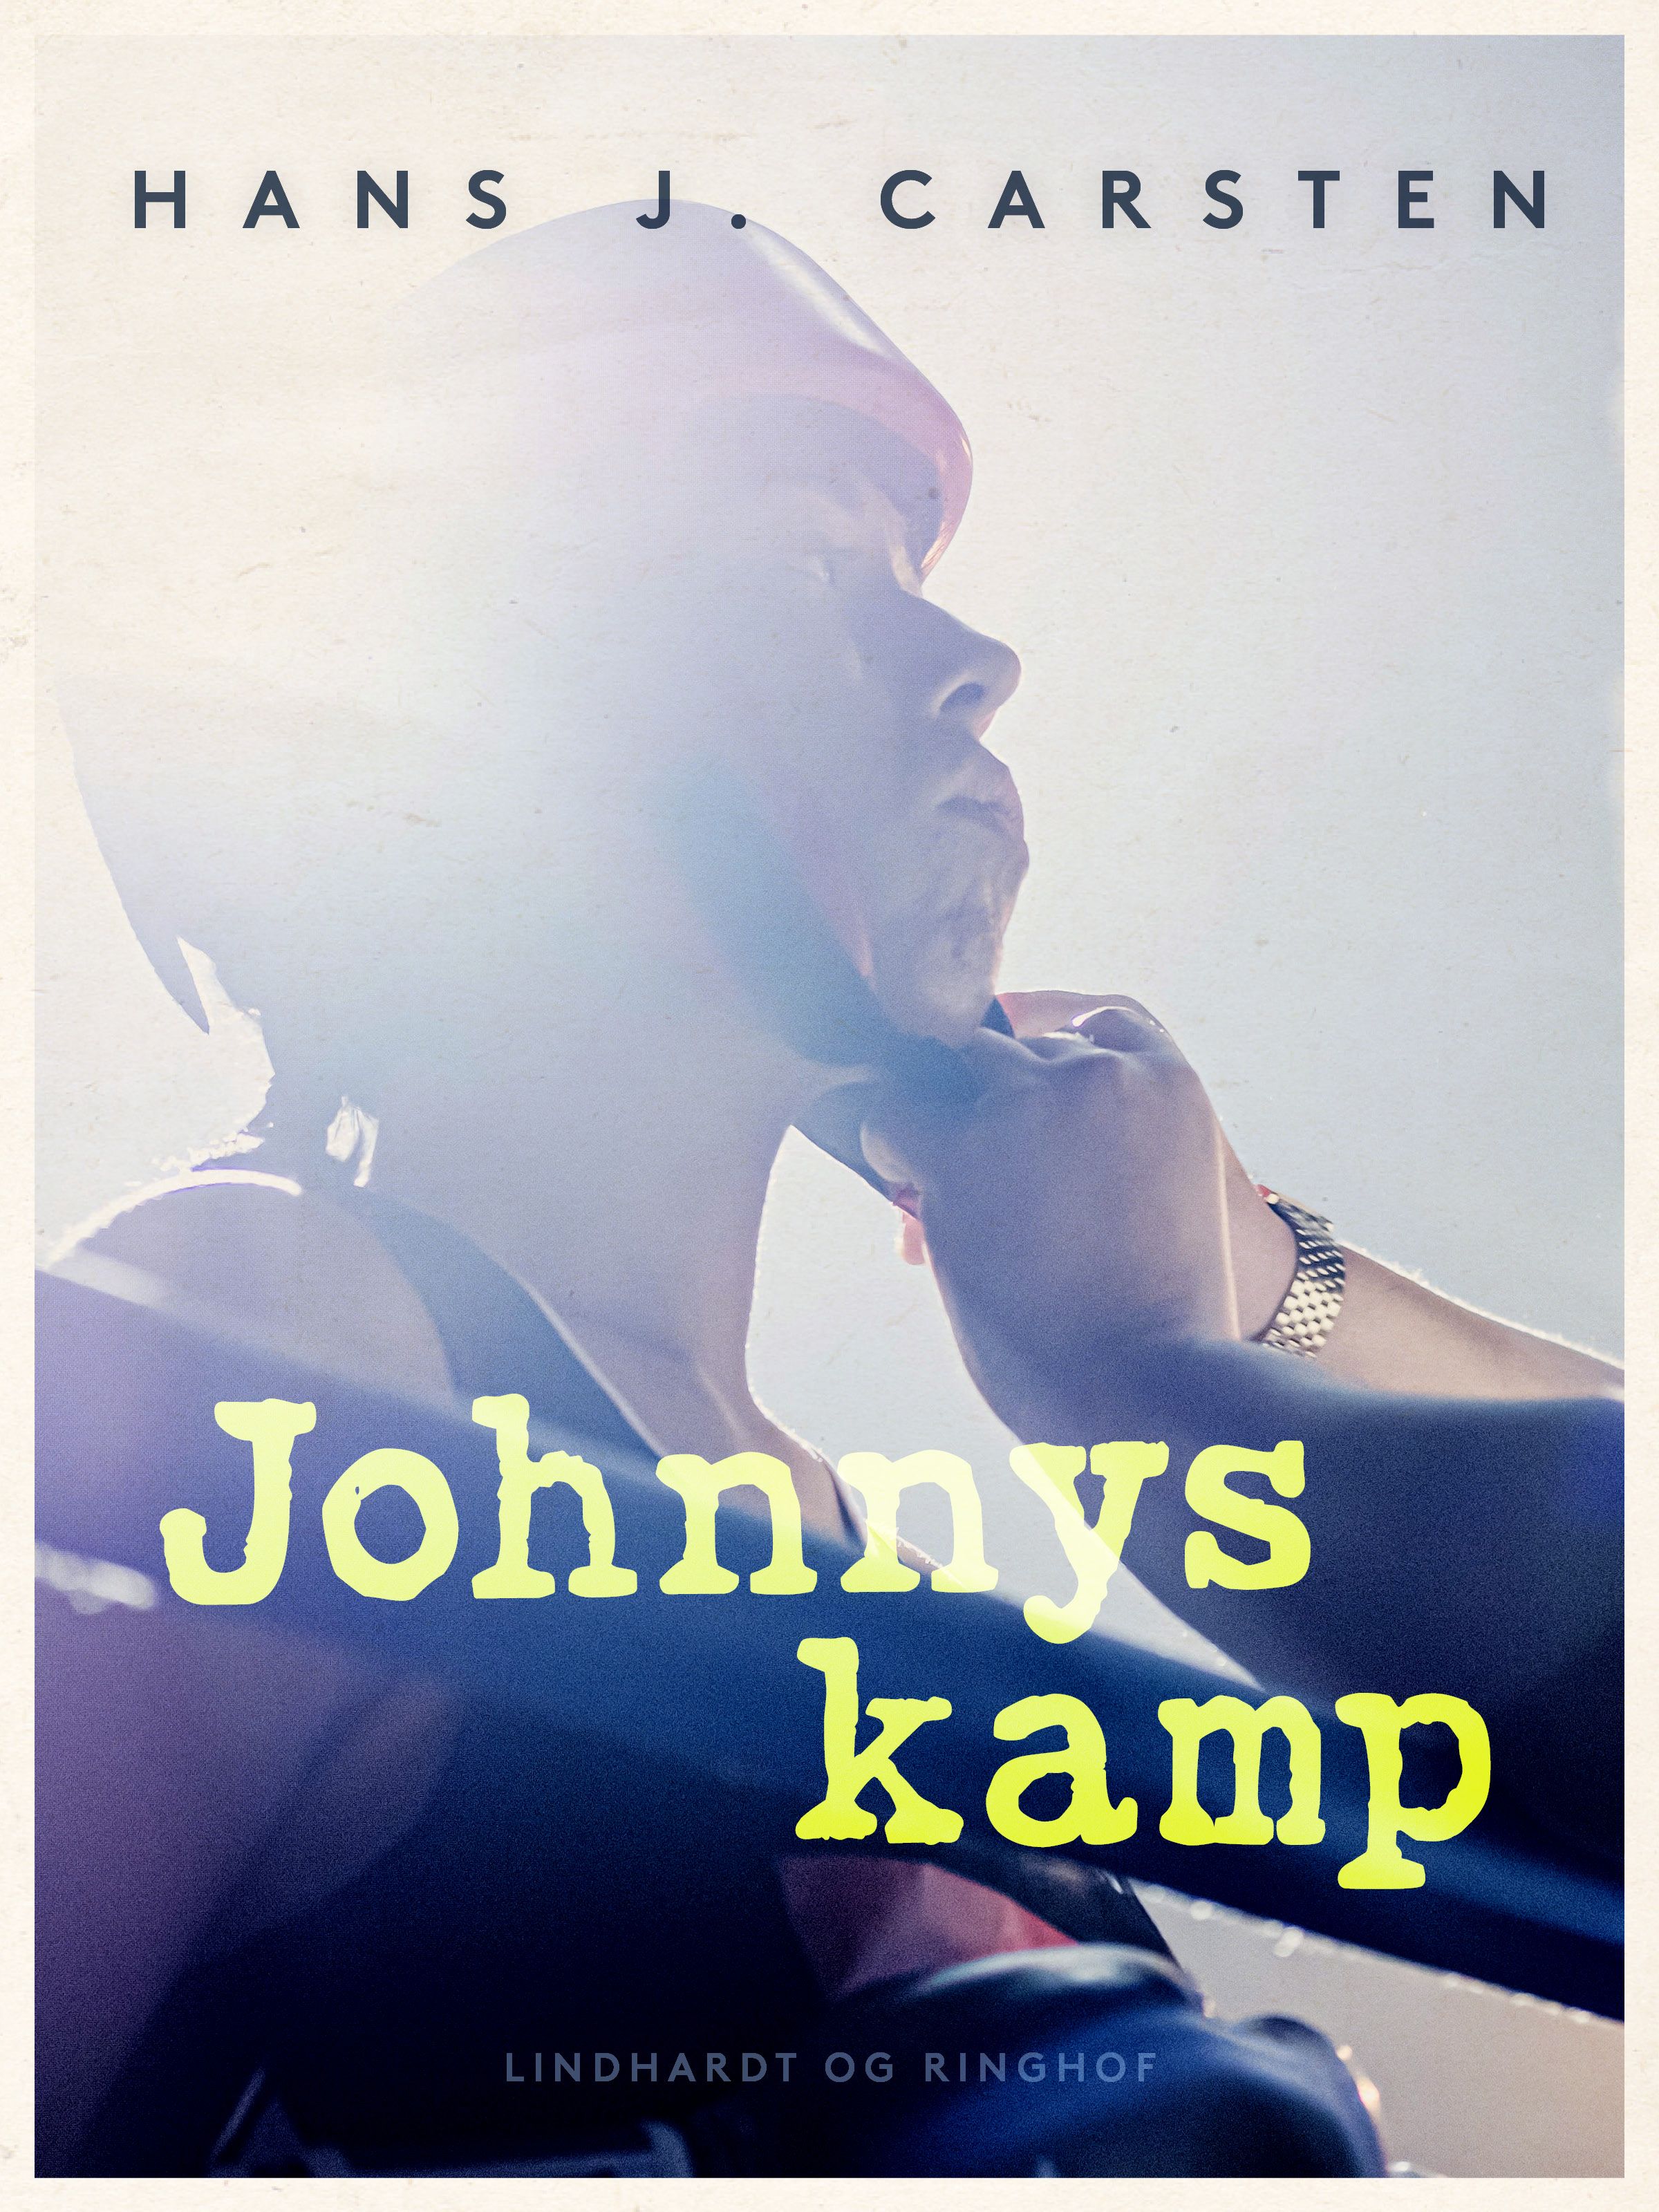 Johnnys kamp, e-bok av Hans Jakob Helms, Karsten Studstrup